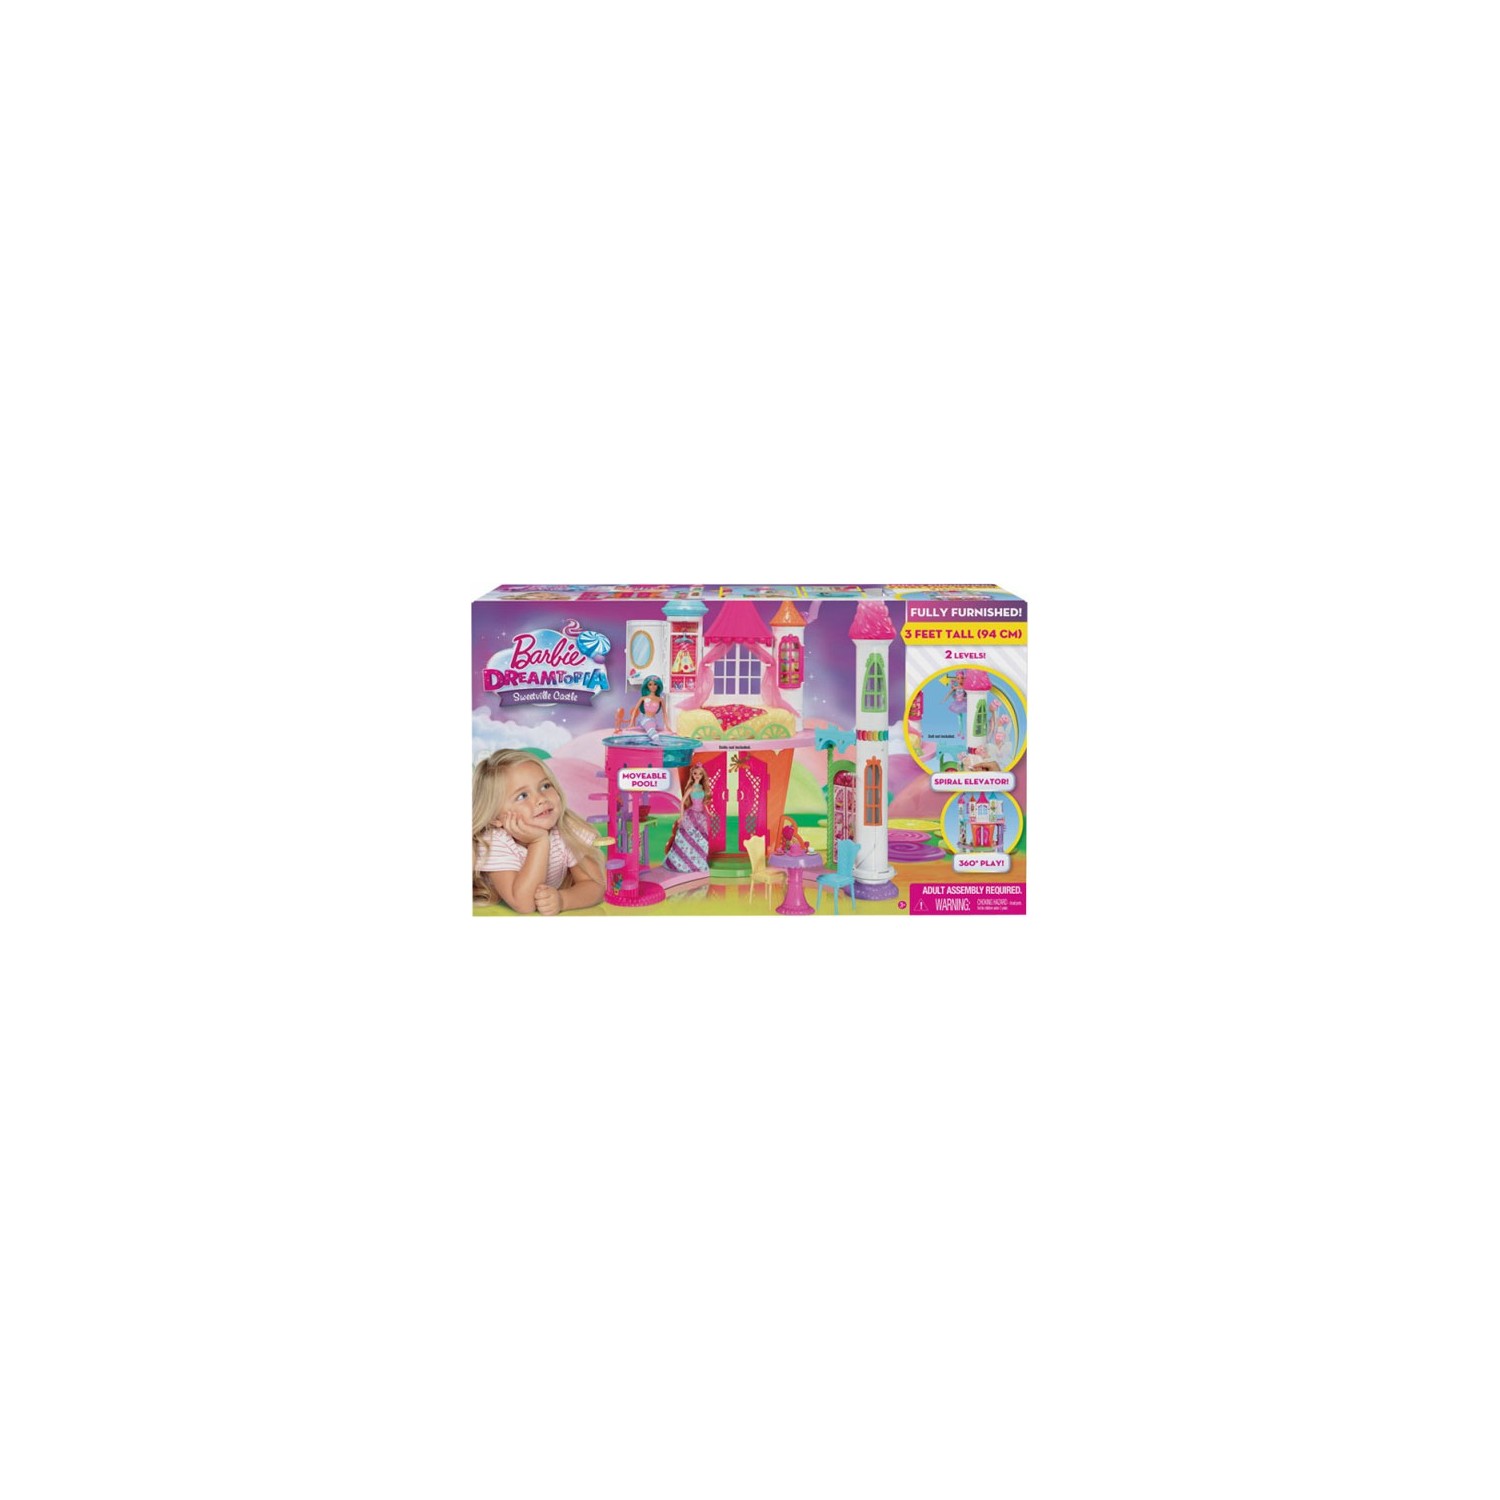 Кукла Barbie Dreamtopia Candy Kingdom Castle DYX32 barbie mermaid playset dreamtopia